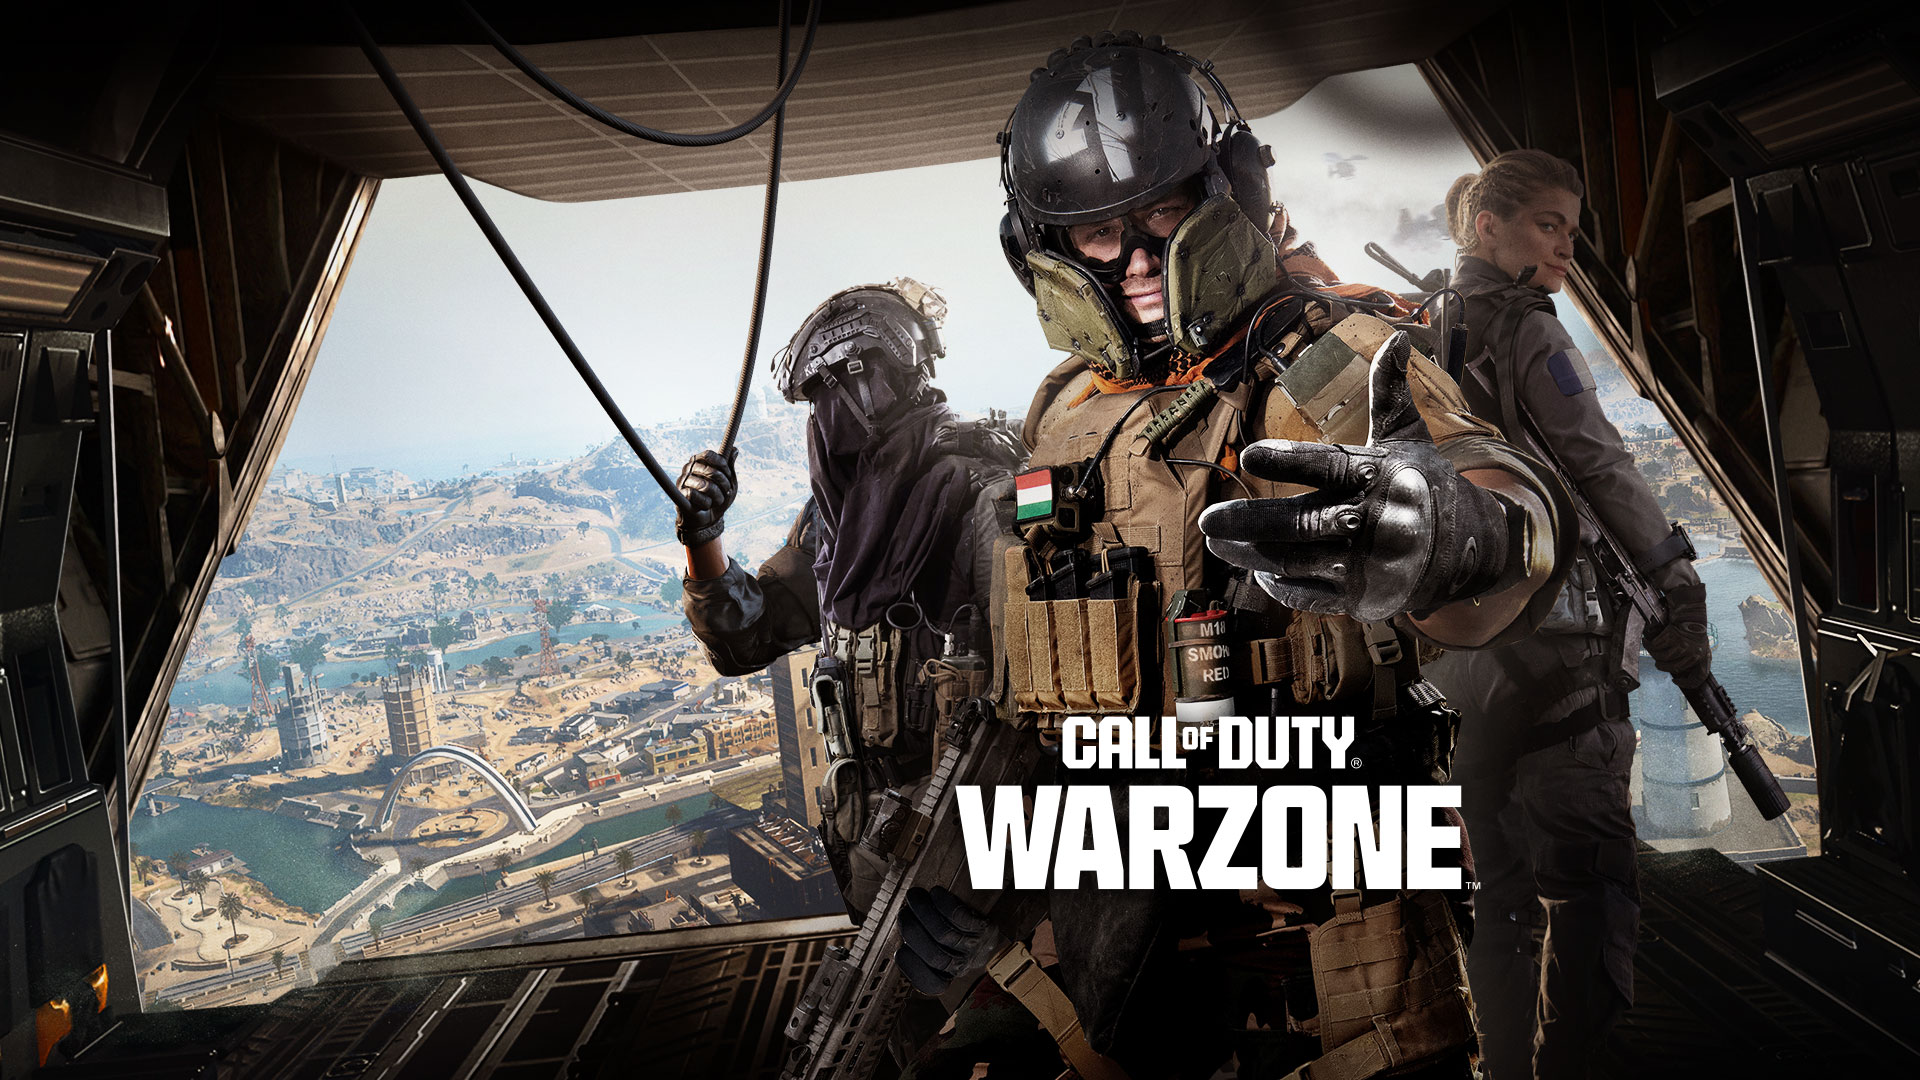 Call of Duty Warzone, du står i baksätet på ett transportflygplan och en trio Operators sträcker ut handen för att bjuda in dig till striden.